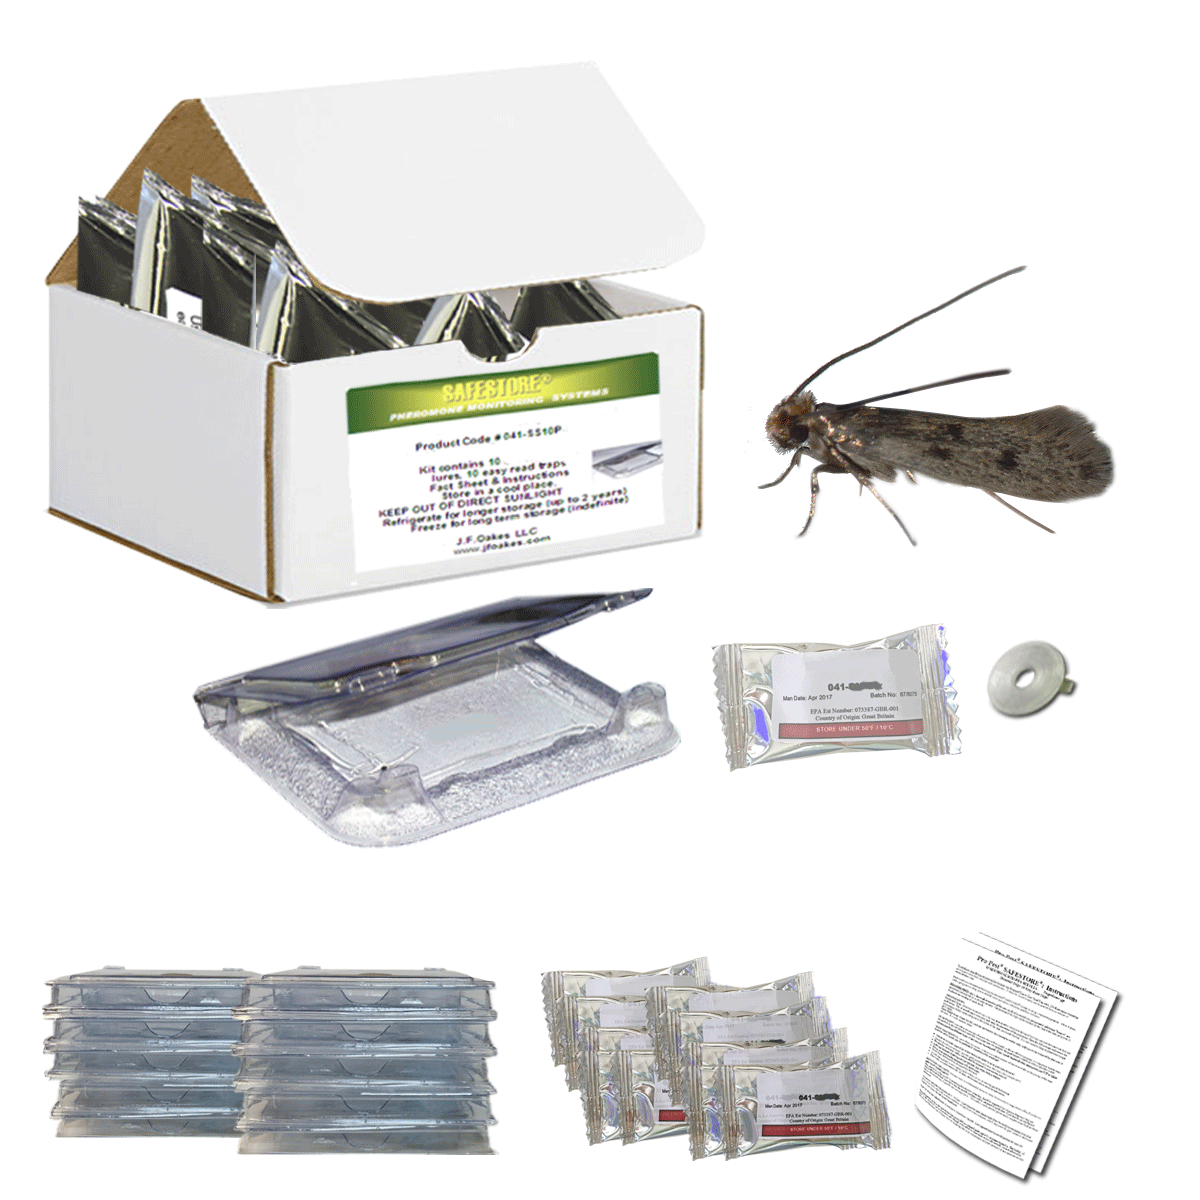 10 Complete Clothes Moth Traps